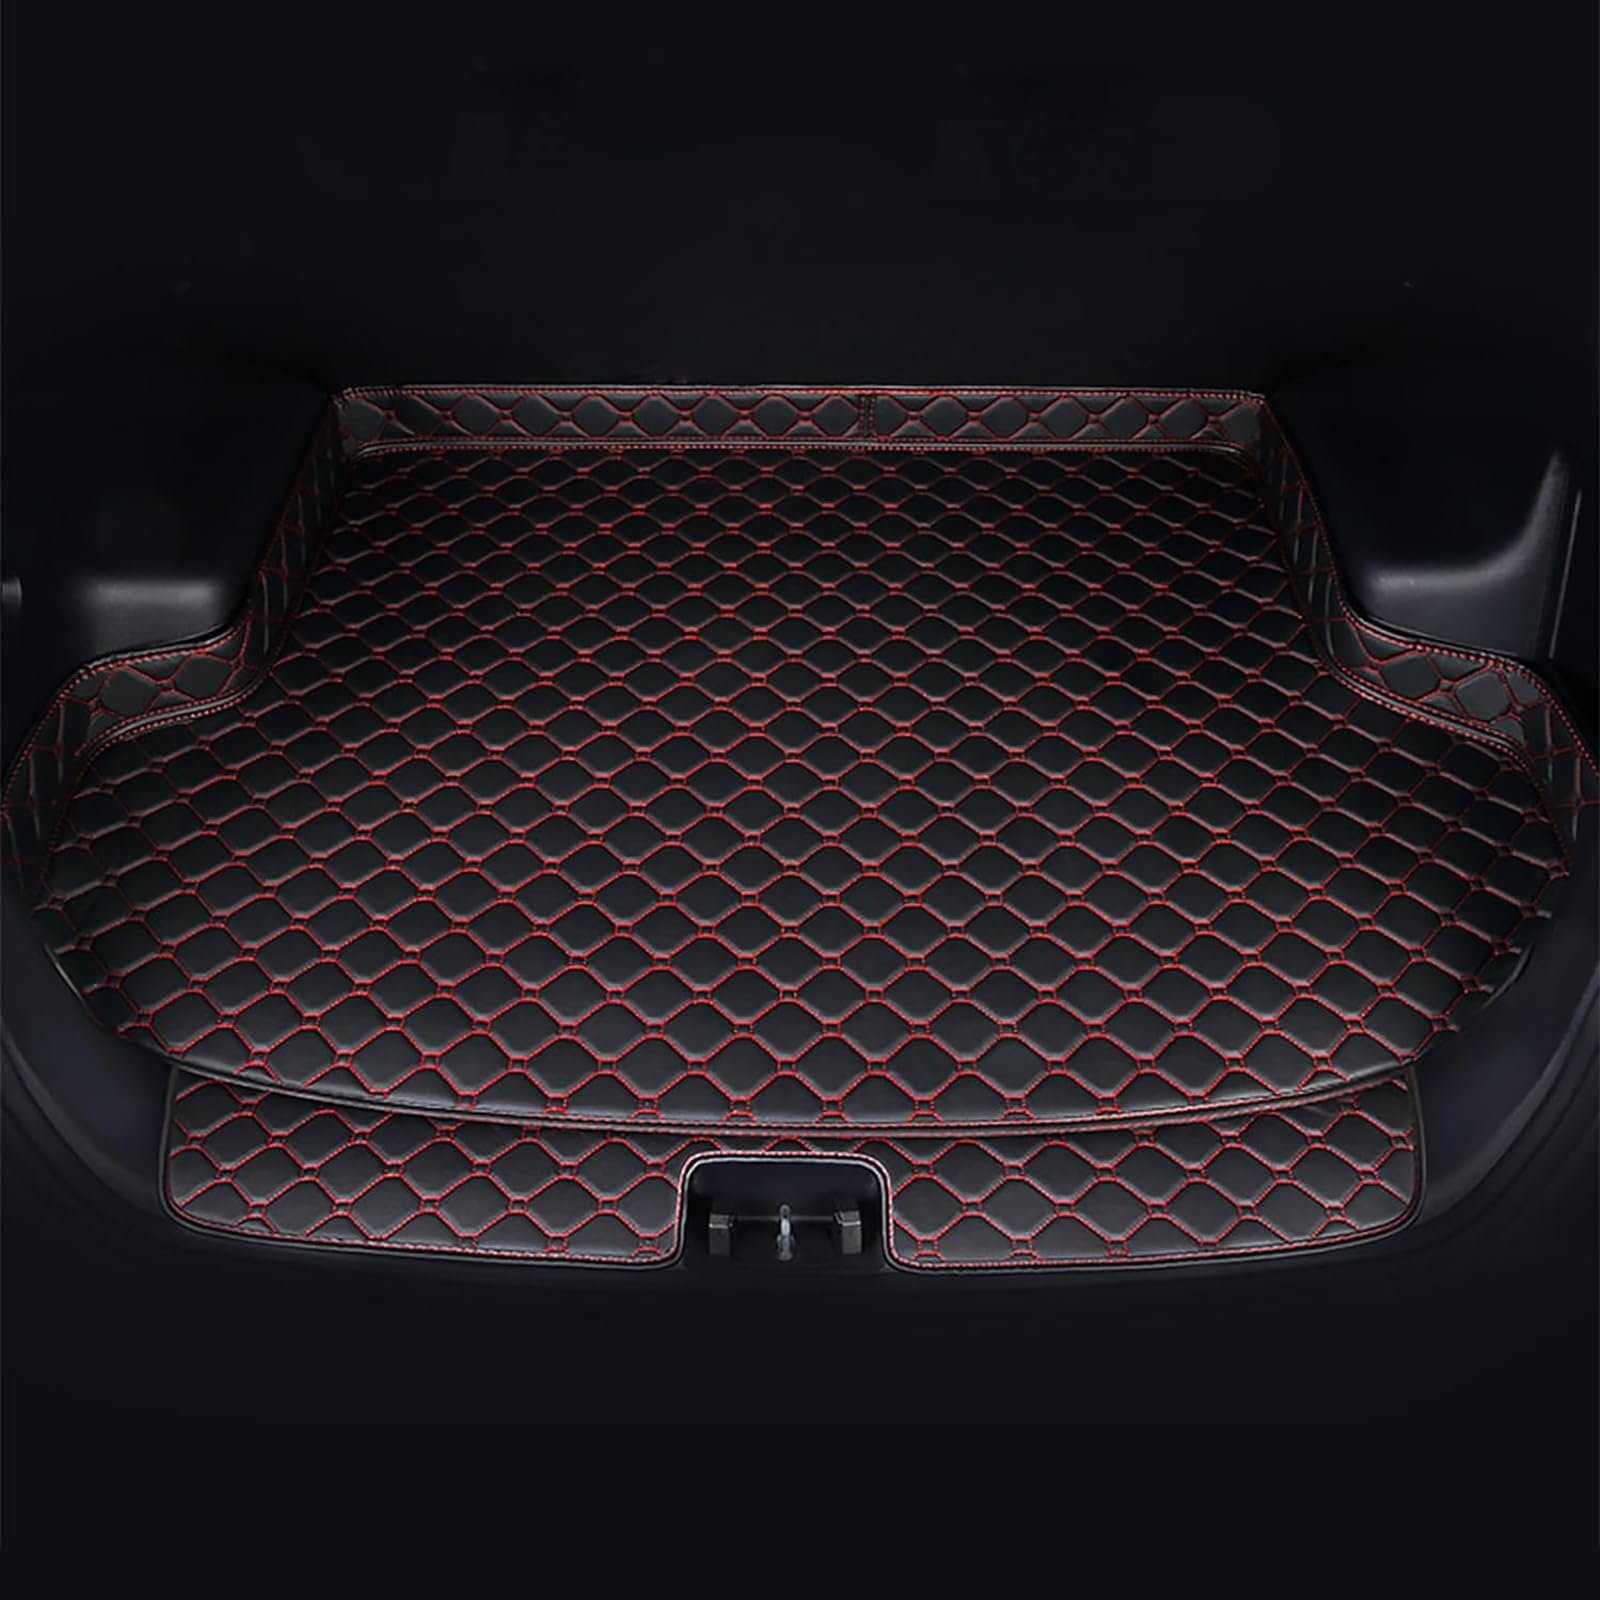 Auto Leder Kofferraummatten Für Tesla Model X(7seats) 2015 2016 2017 2018, Wasserdicht rutschfest Kofferraumwanne Allwetter Cargo Teppich Schutzmatte Interieur Zubehör,C/Black-Red von FNUQKREF